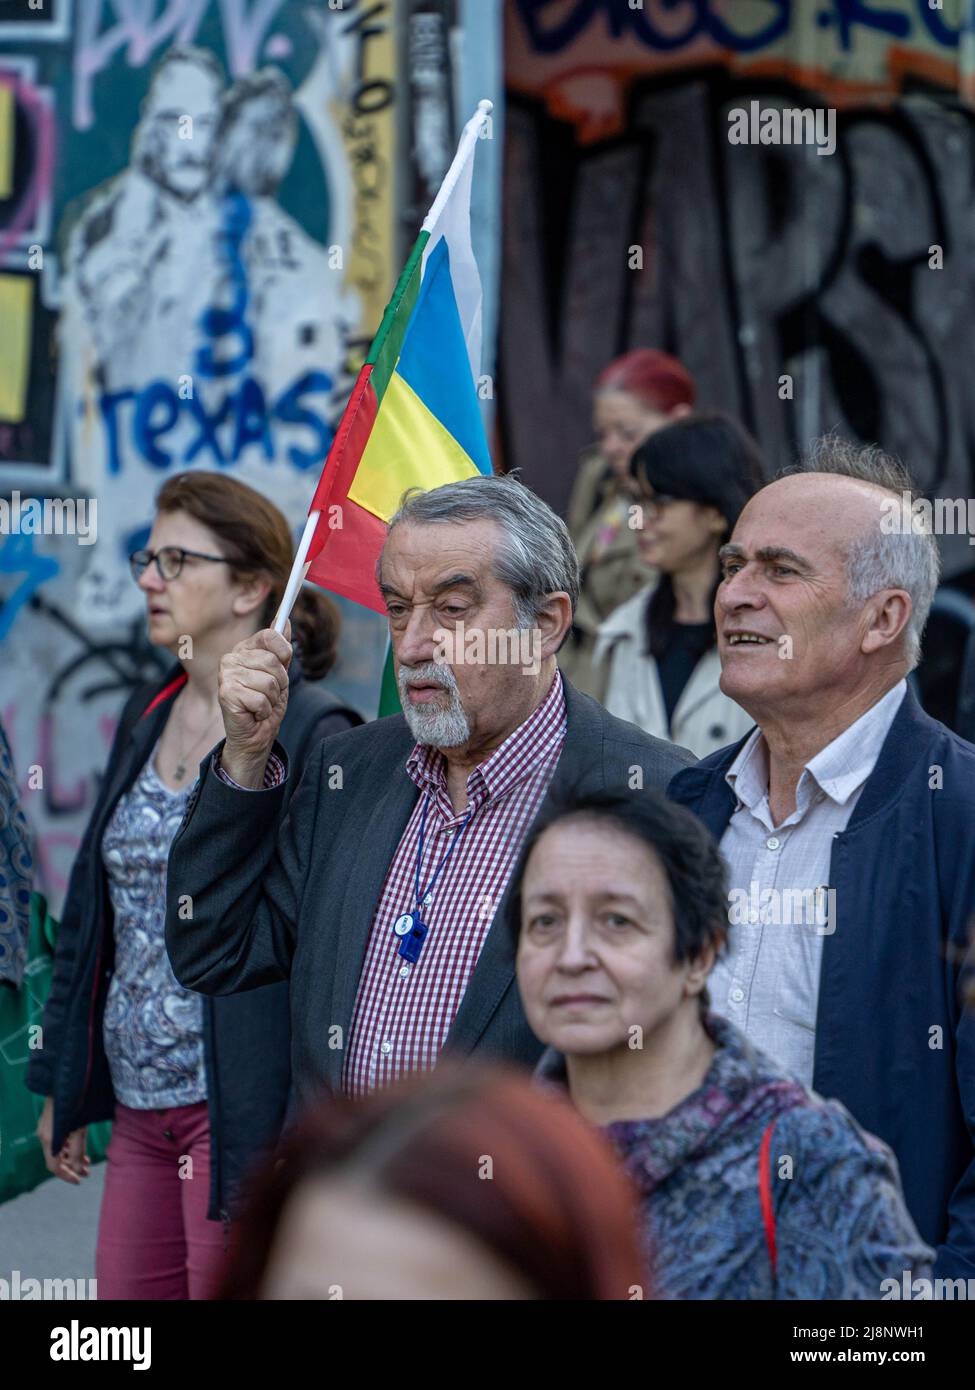 Sofia, Bulgarien - 09. Mai 2022: Zwei reife Männer, von denen einer bulgarische und ukrainische Flaggen in der Hand hält, gehen in einer Menschenmenge Stockfoto